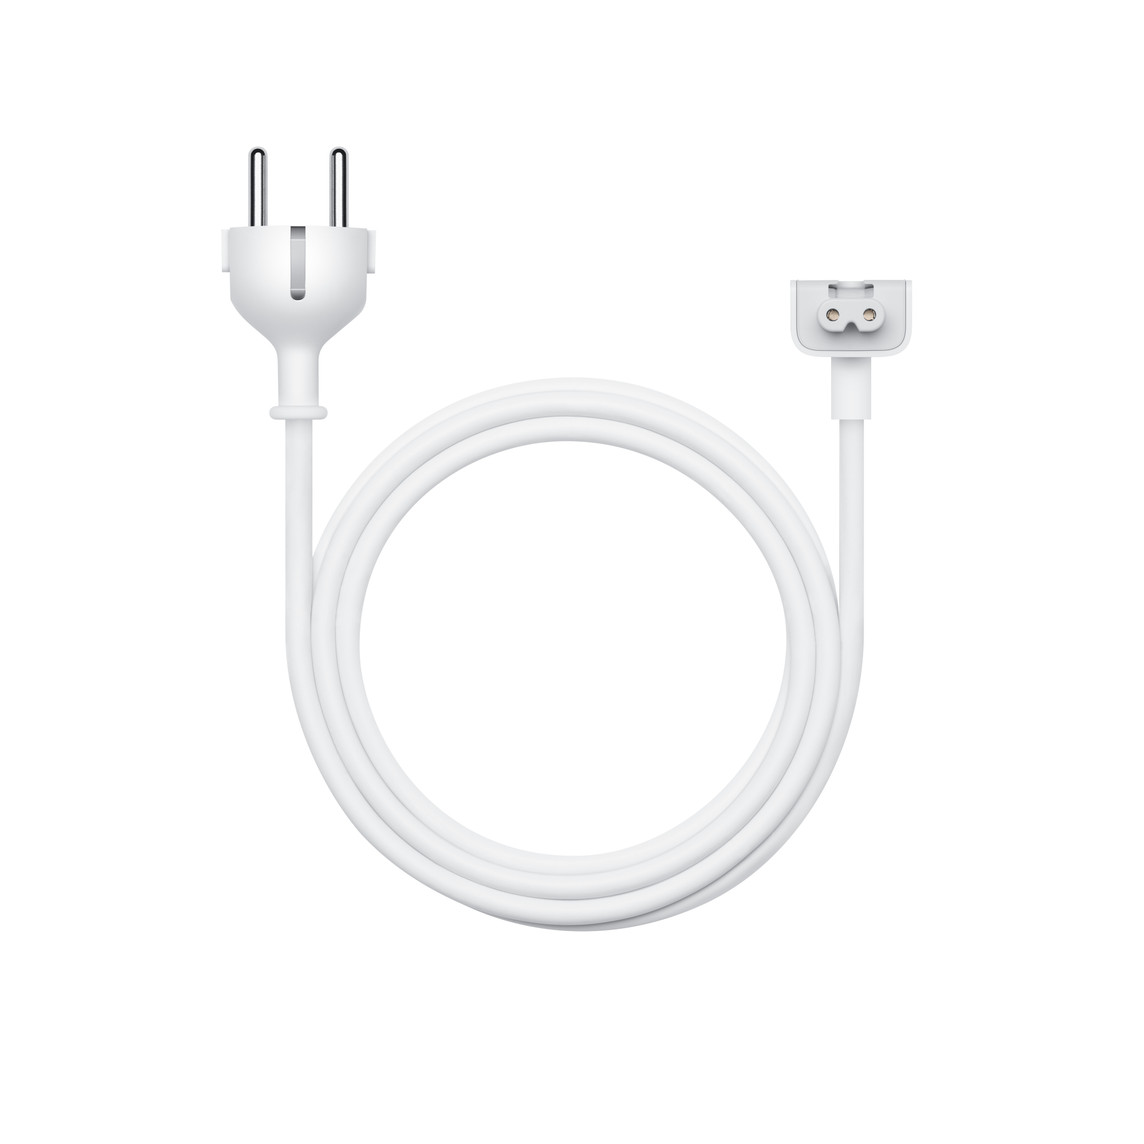 O cabo de extensão para adaptador de corrente de 1,8 metros é um cabo CA que permite aumentar o comprimento do fio do adaptador de corrente Apple.